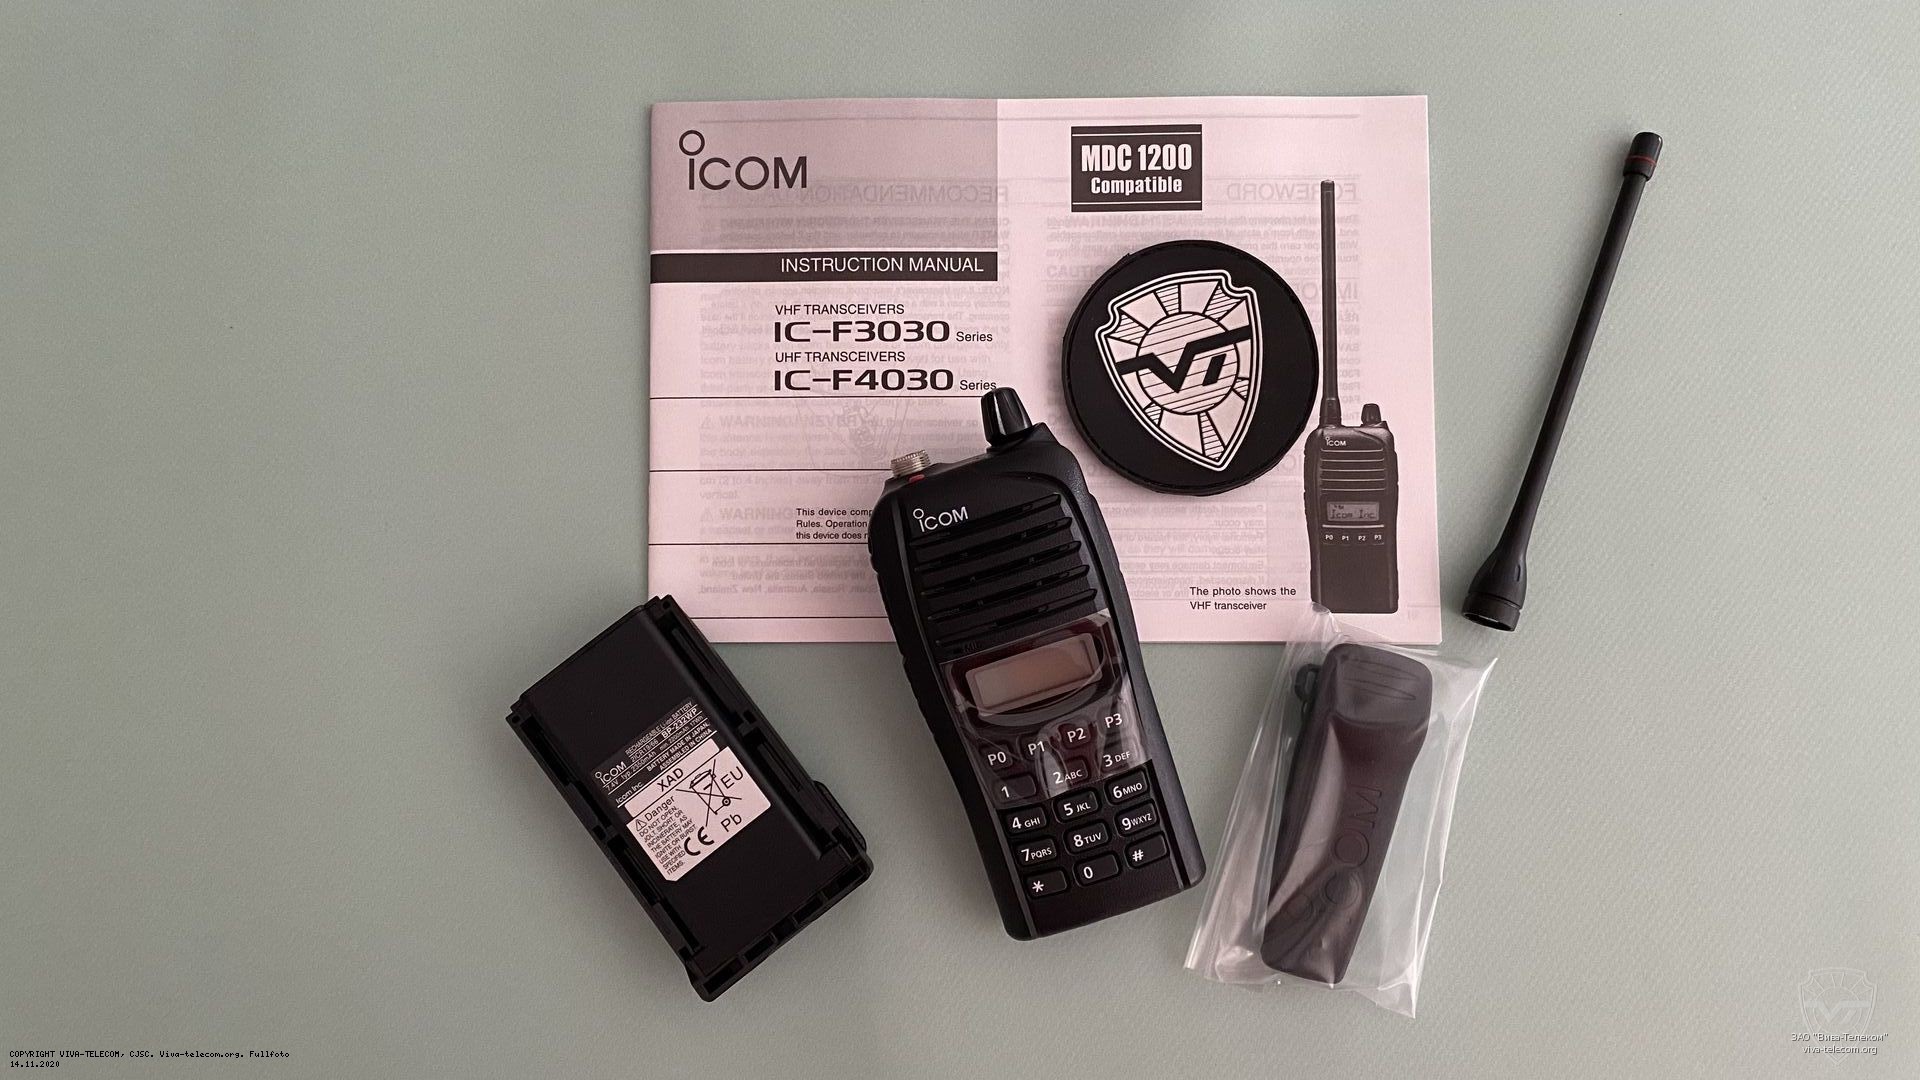   Icom IC-F3036T, IC-F4036T